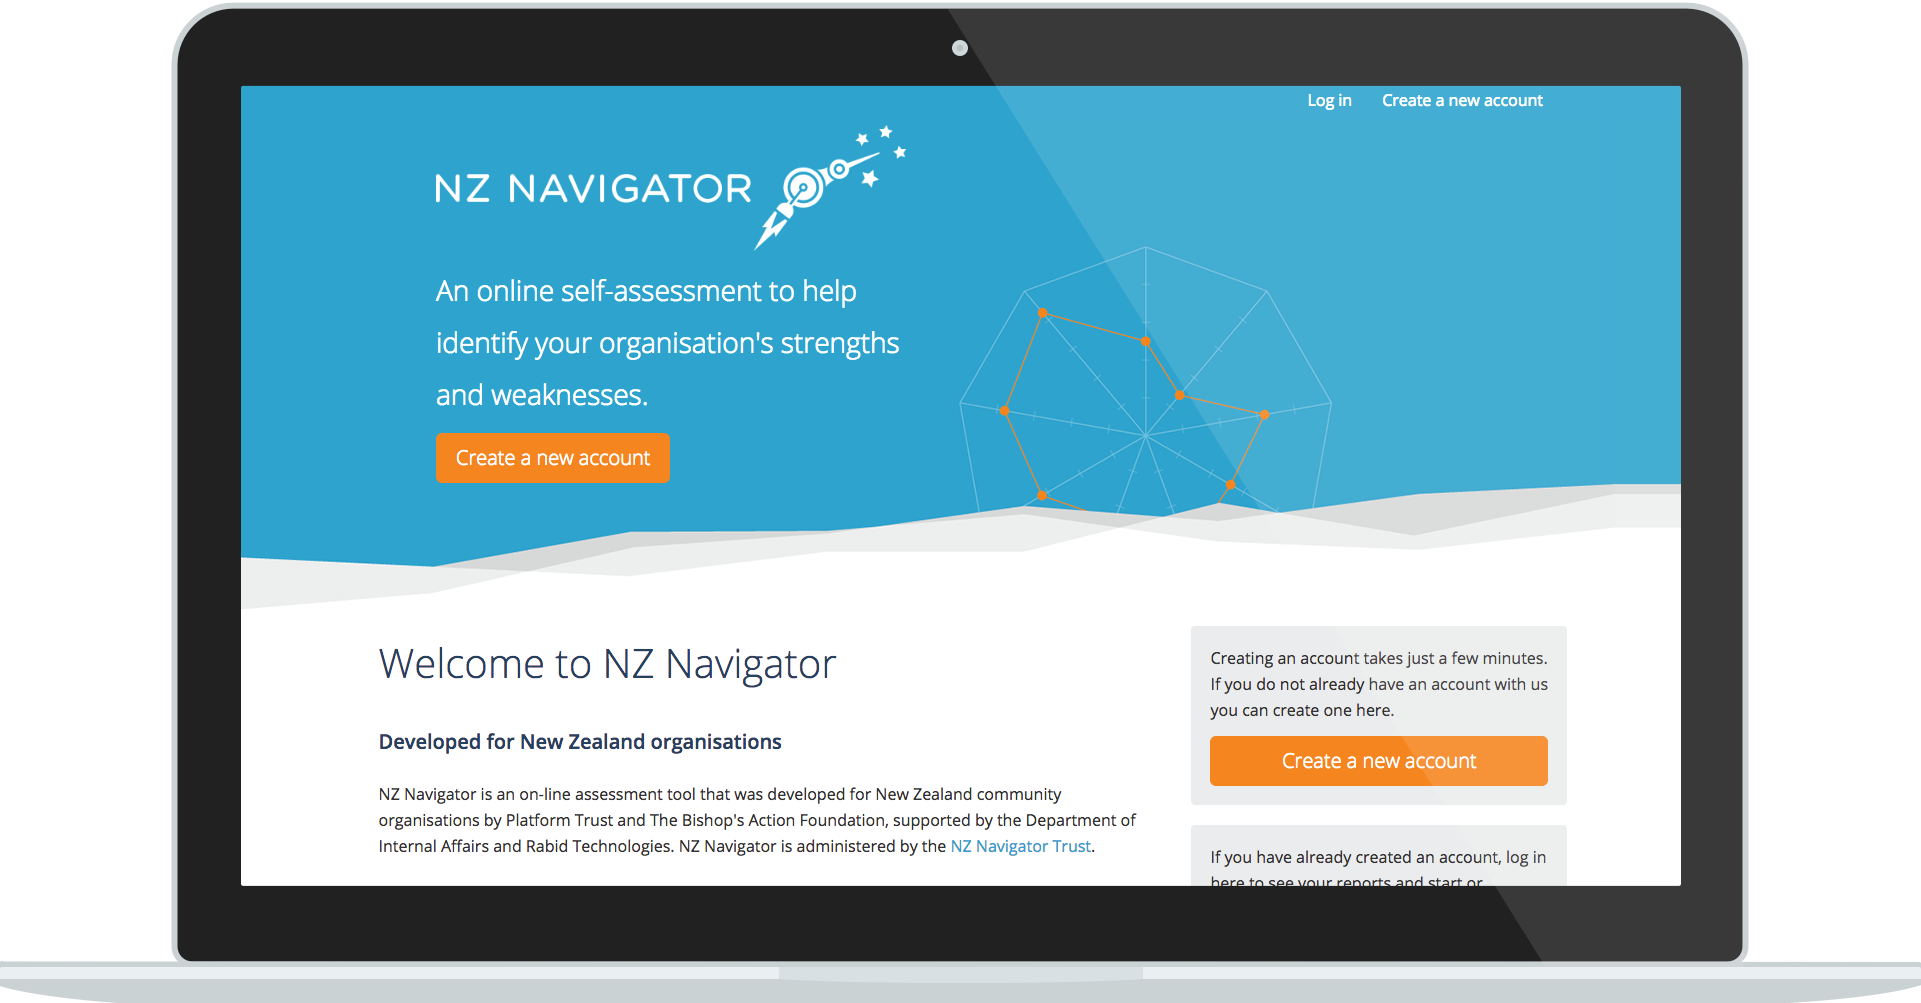 NZ Navigator website service design